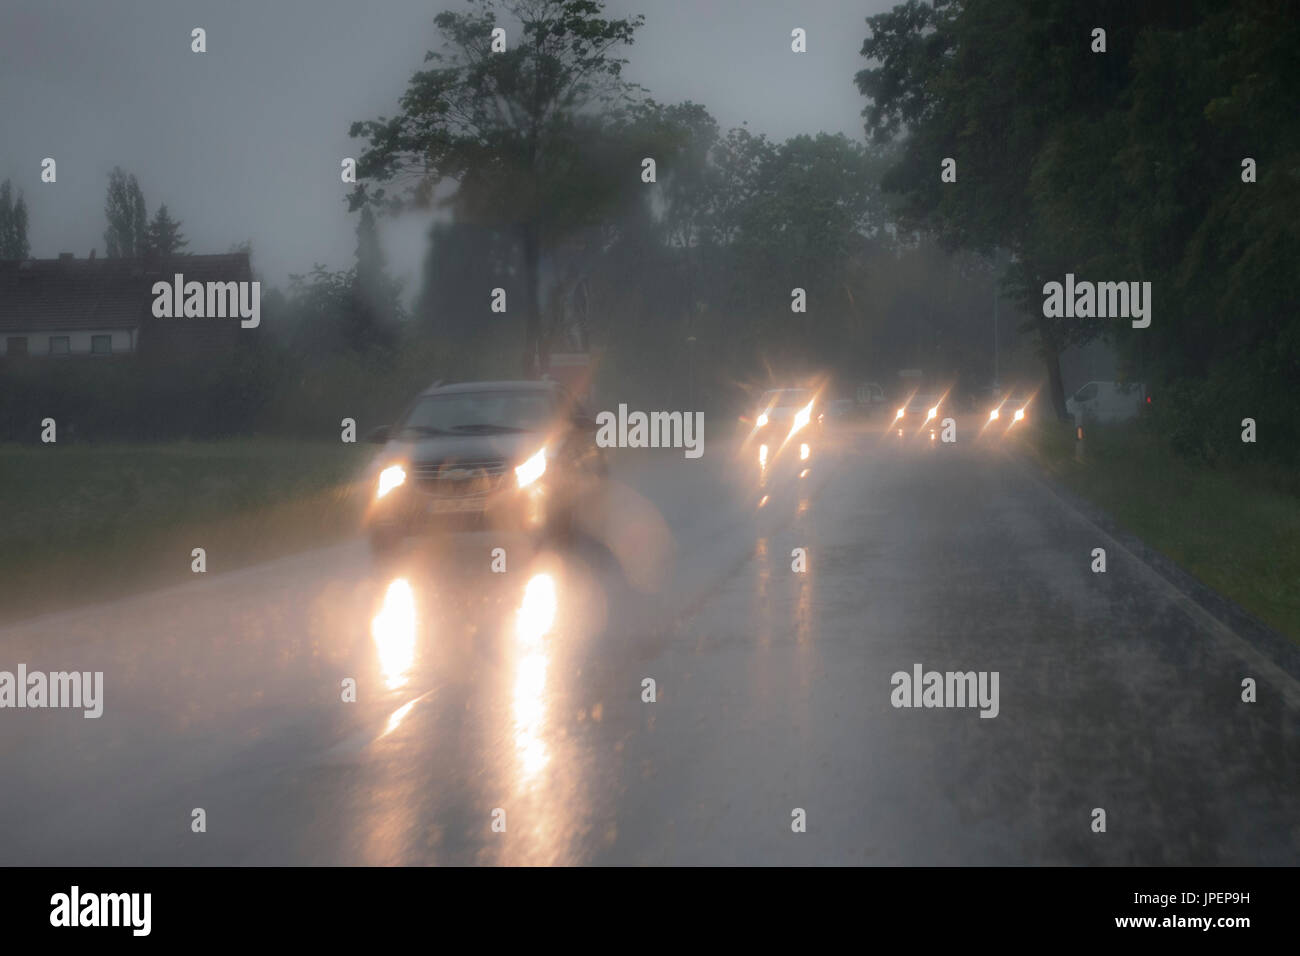 Gefährliche Autofahrt bei Starkregen, blendende Scheinwerfer im Gegenverkehr Stock Photo